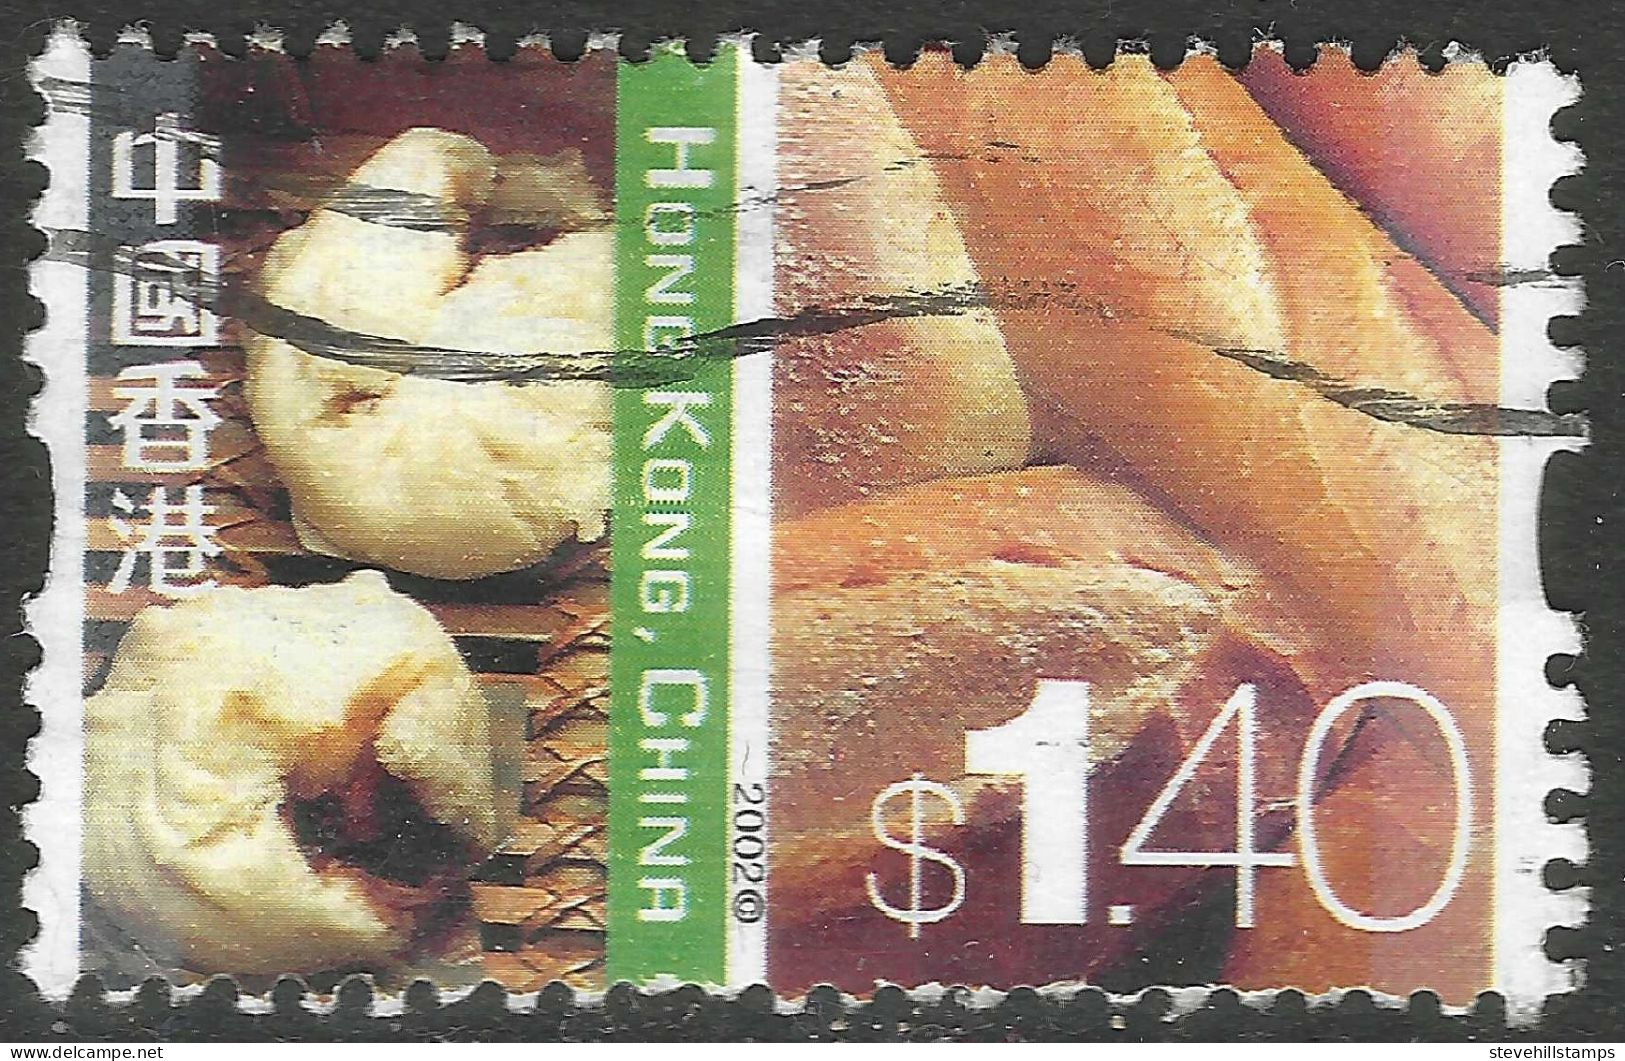 Hong Kong. 2002 Definitives. Cultural Diversity. $1.40 Used. SG 1123 - Usati